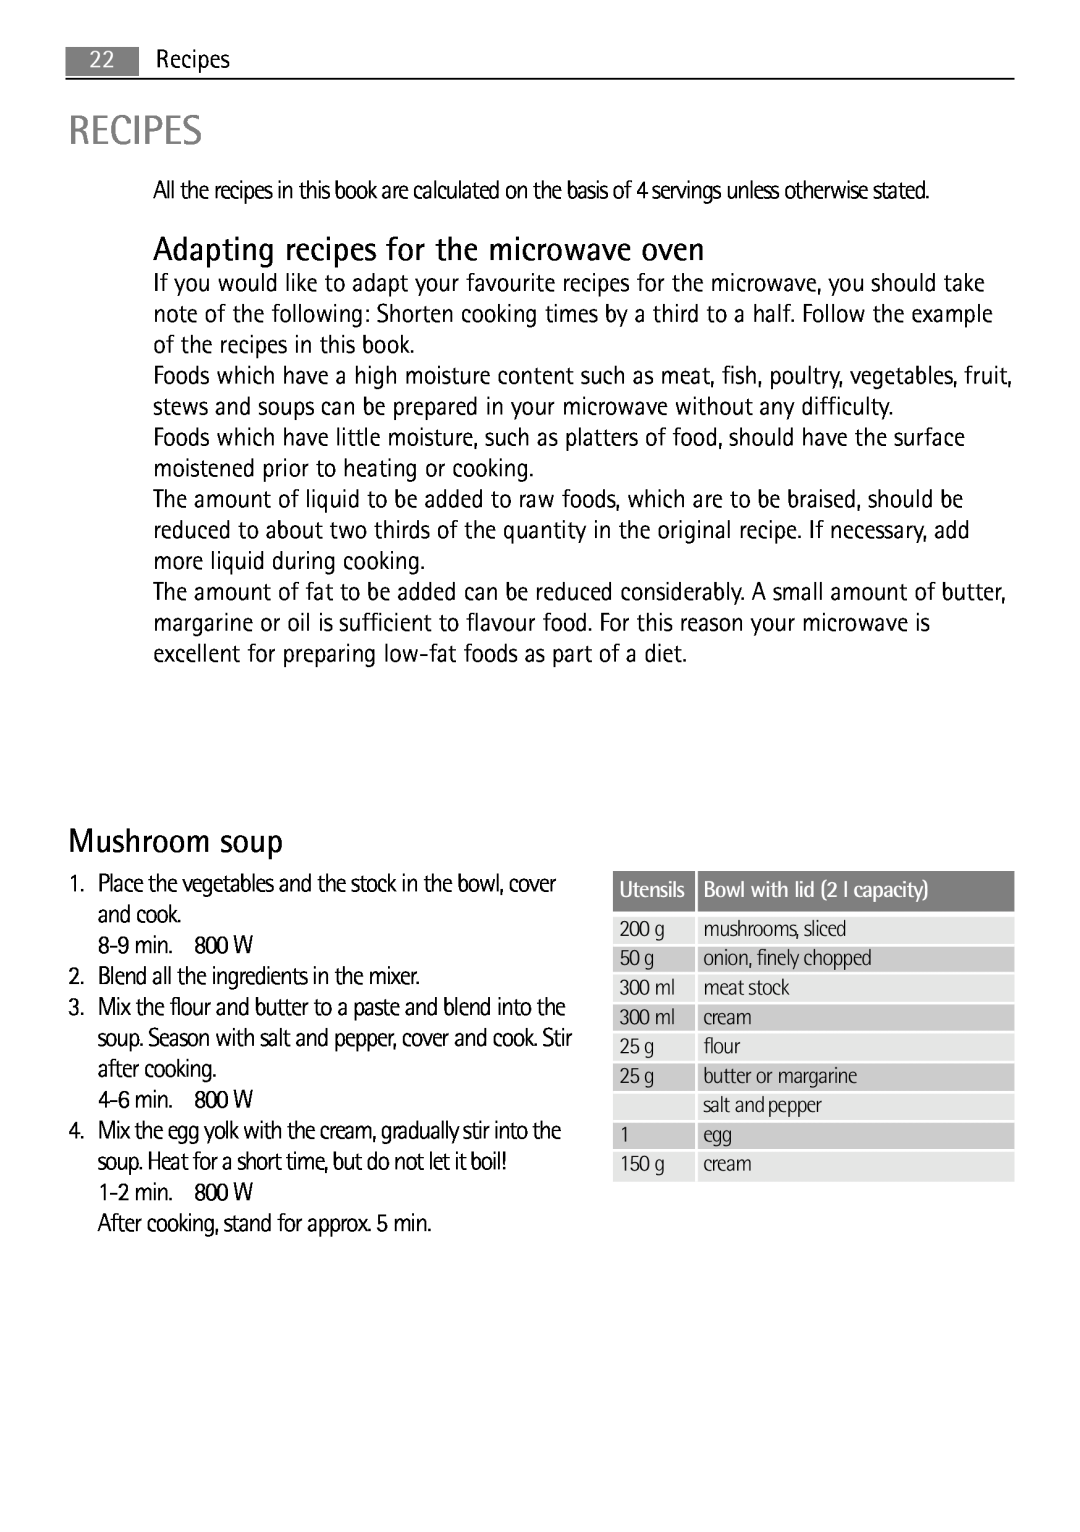 AEG MC1763E, MC1753E user manual Recipes, Adapting recipes for the microwave oven, Mushroom soup 